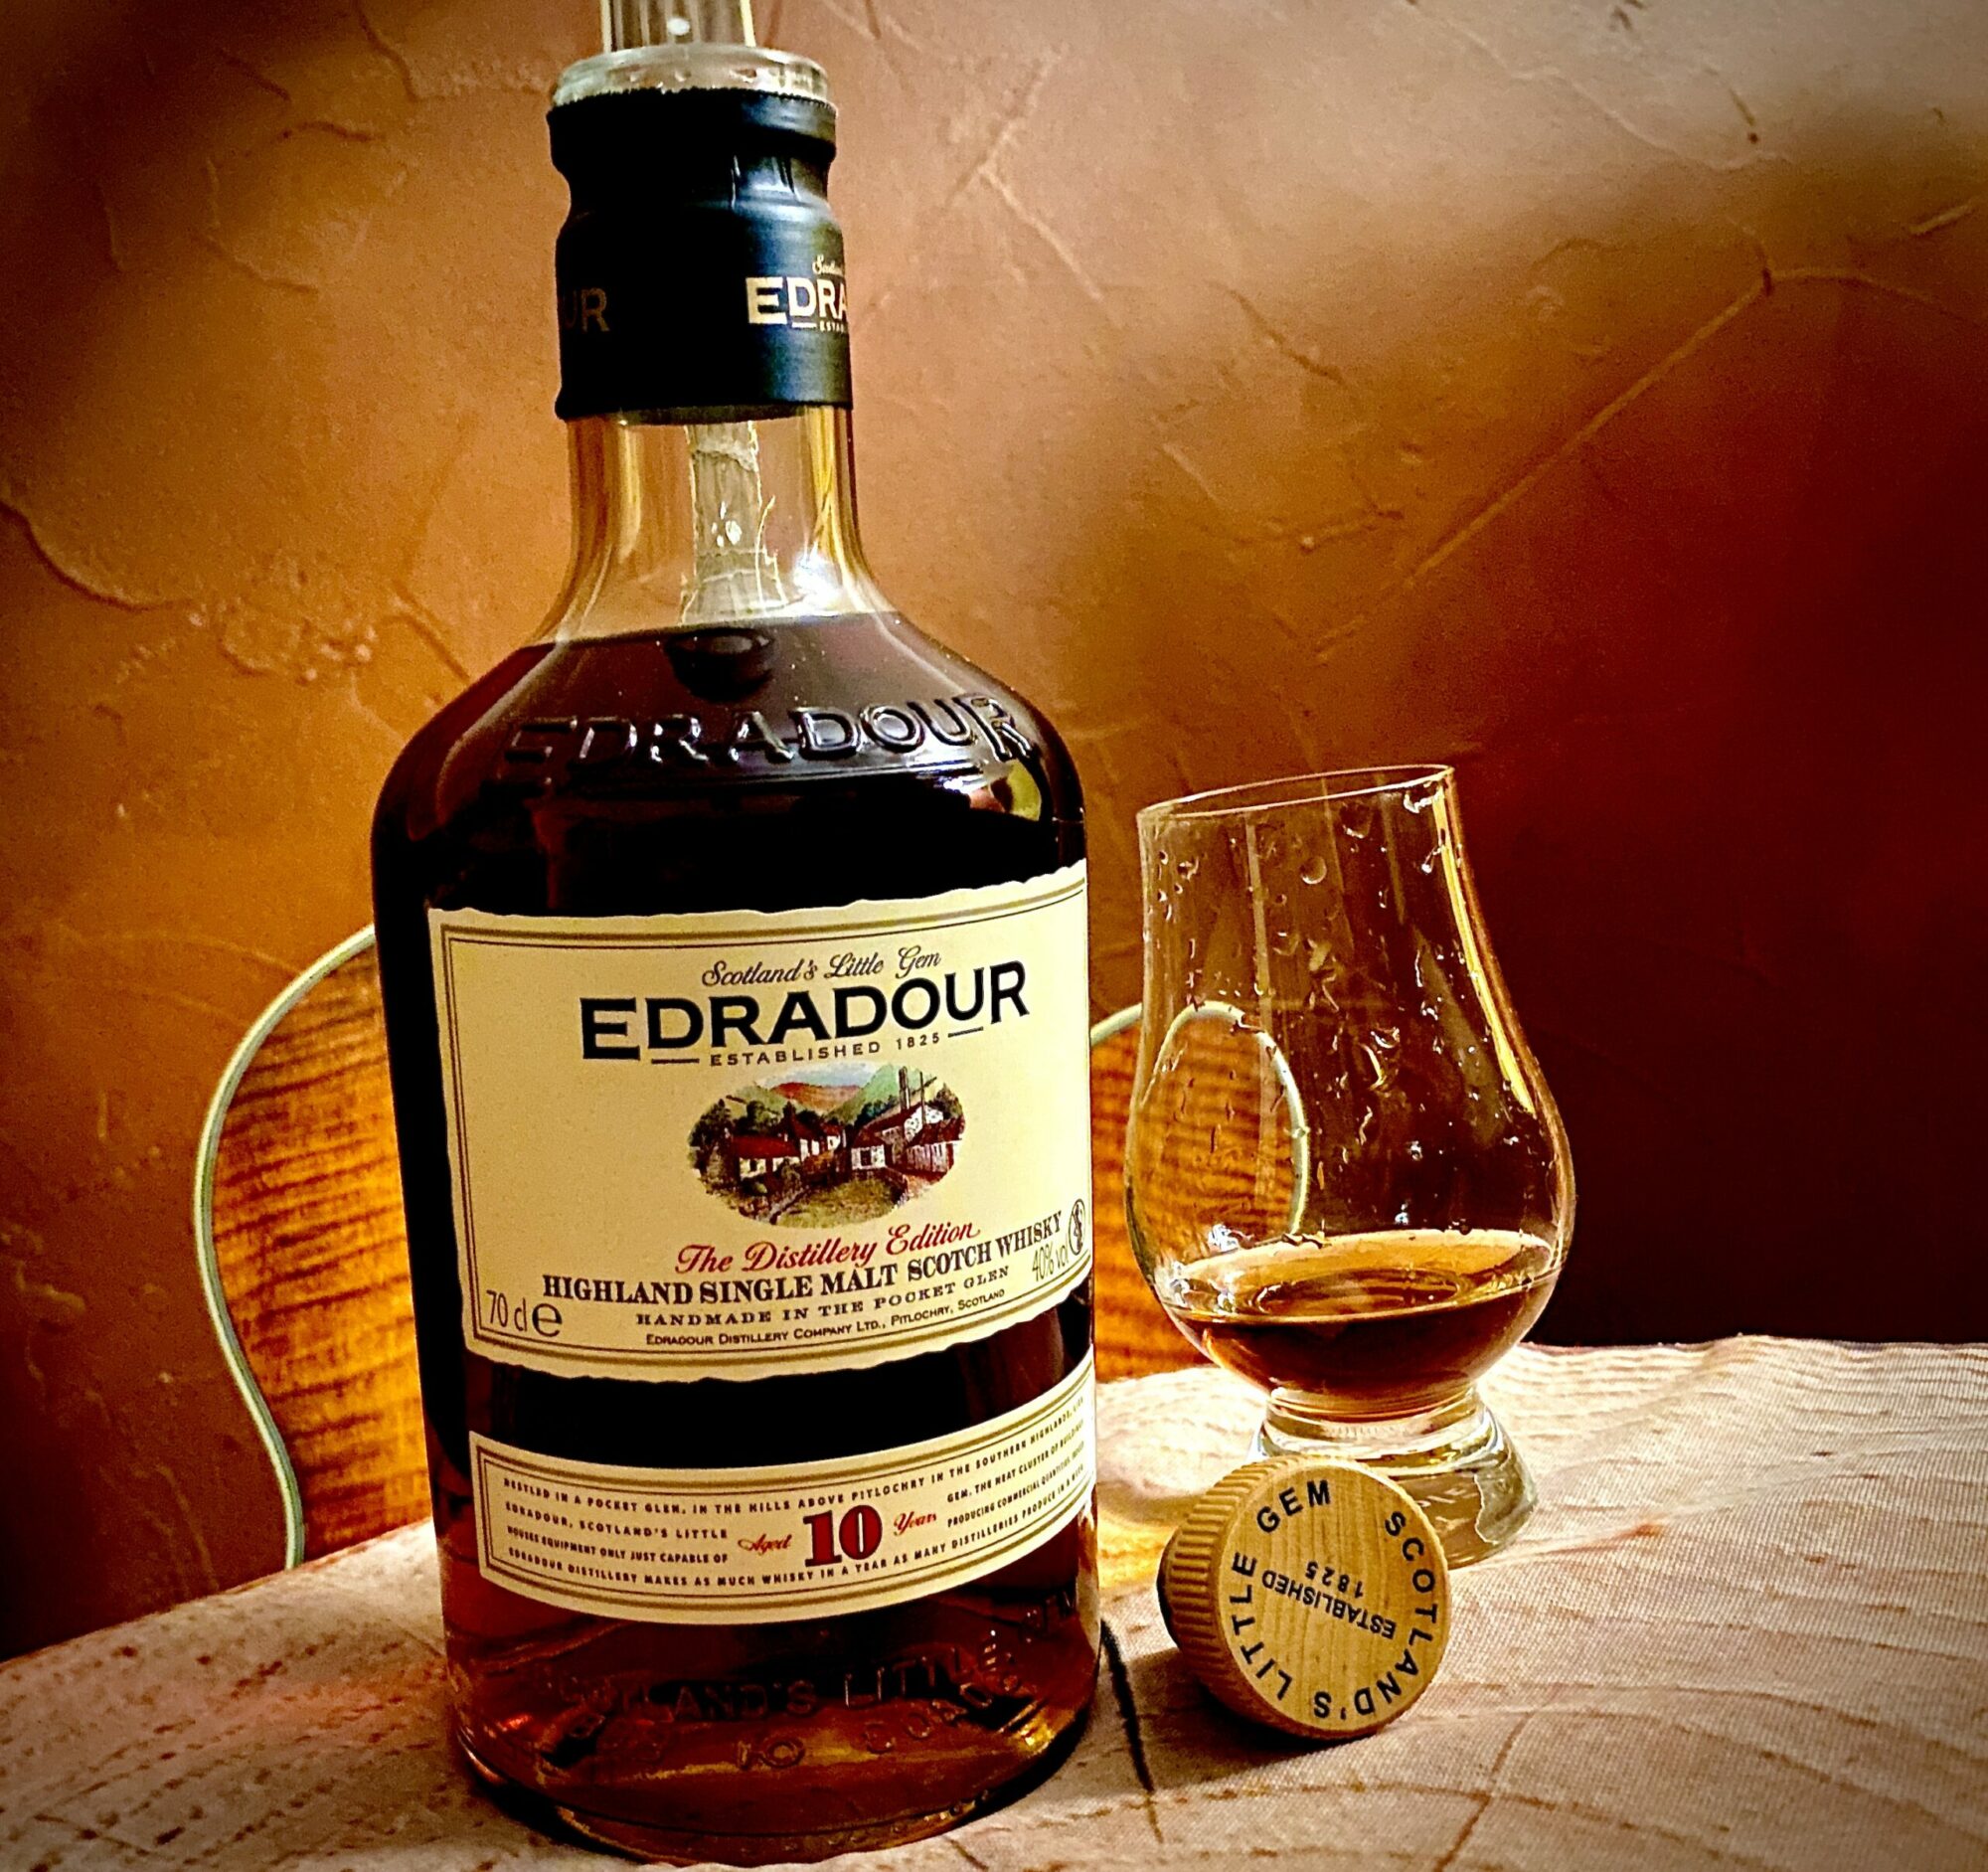 Edradour - Scotland's little gem